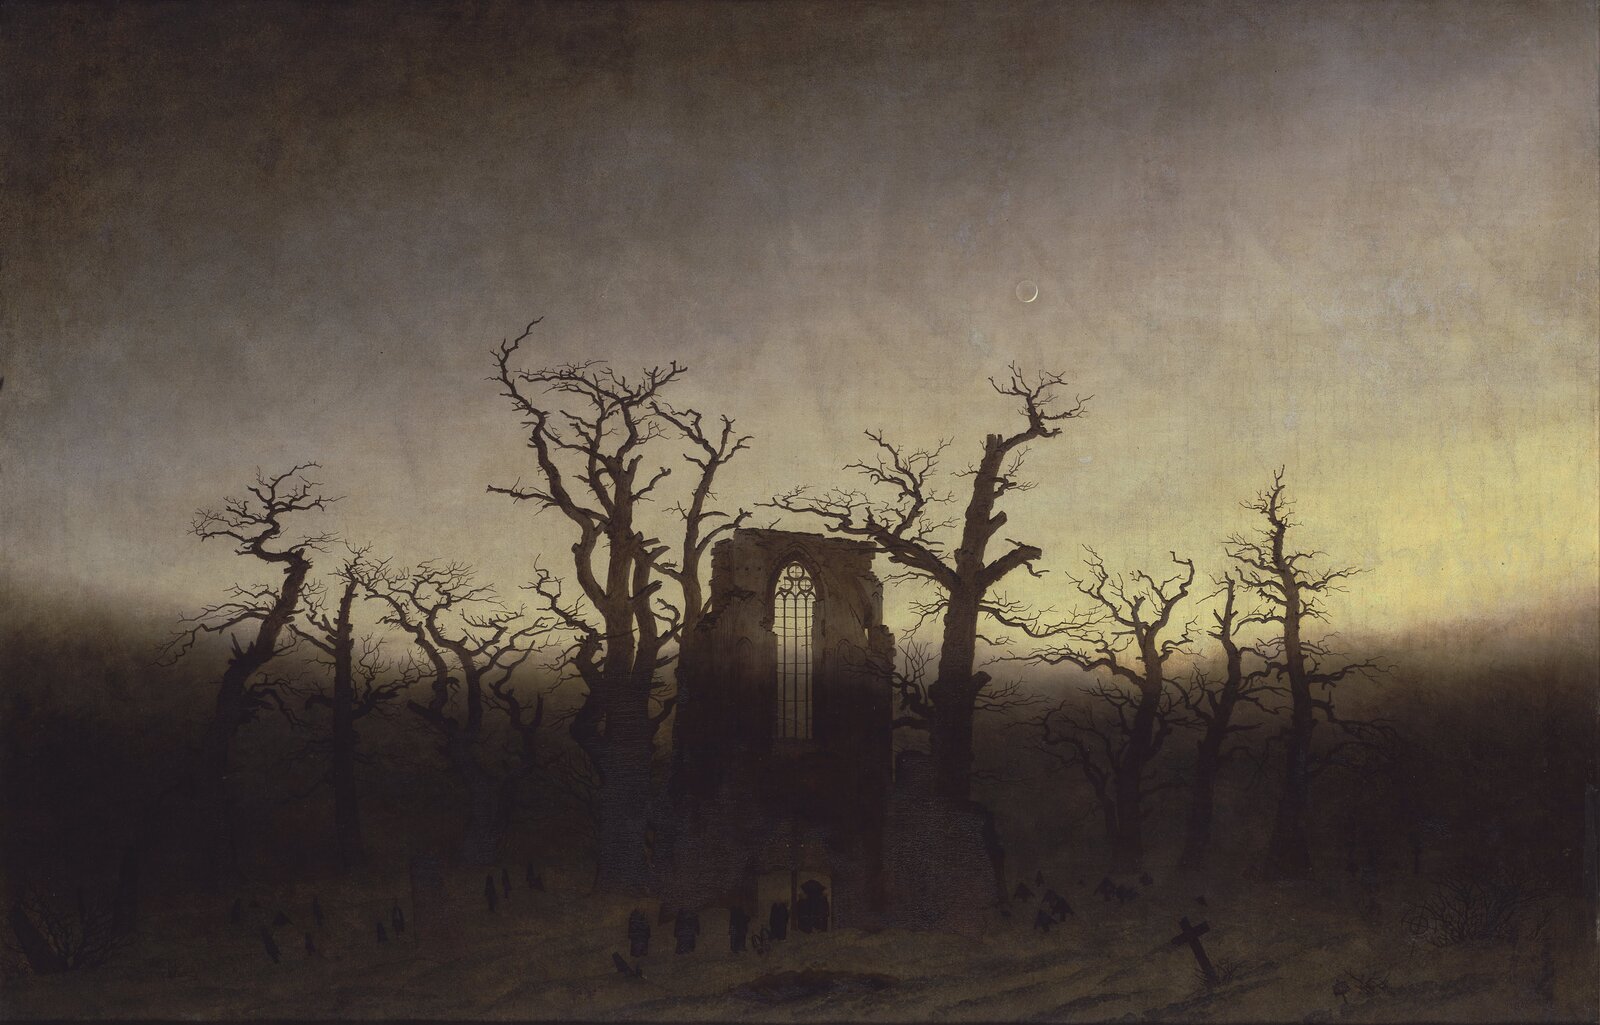 Ilustracja przedstawia cmentarz, na którym są drzewa bez liści i małe nagrobki; w centrum obrazka znajdują się ruiny budynku z wysokim oknem. Ilustracja w ciemnych odcieniach. 